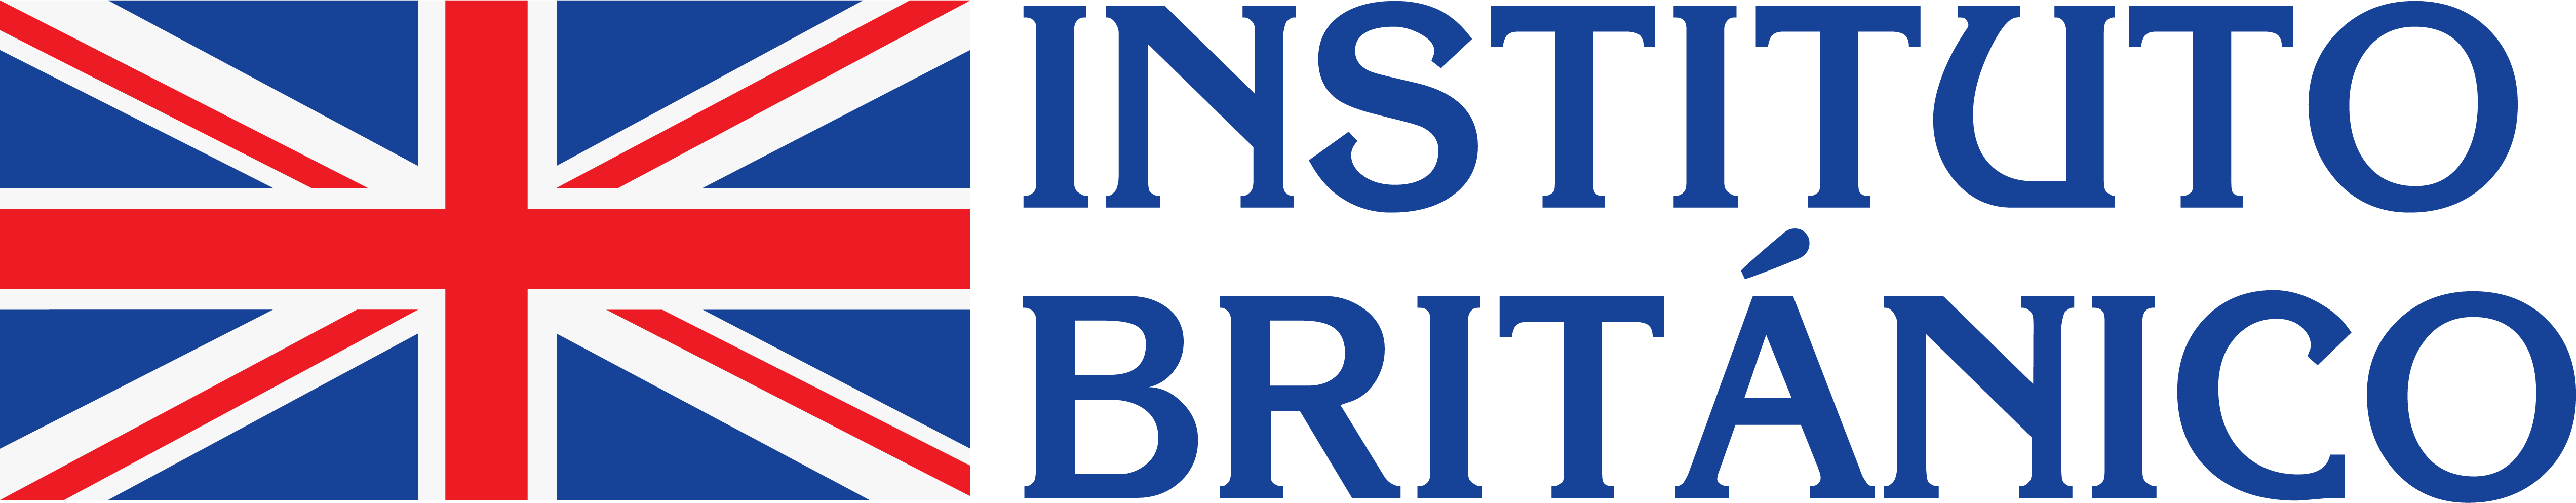 Instituto británico - educación agencia de marketing en tunja